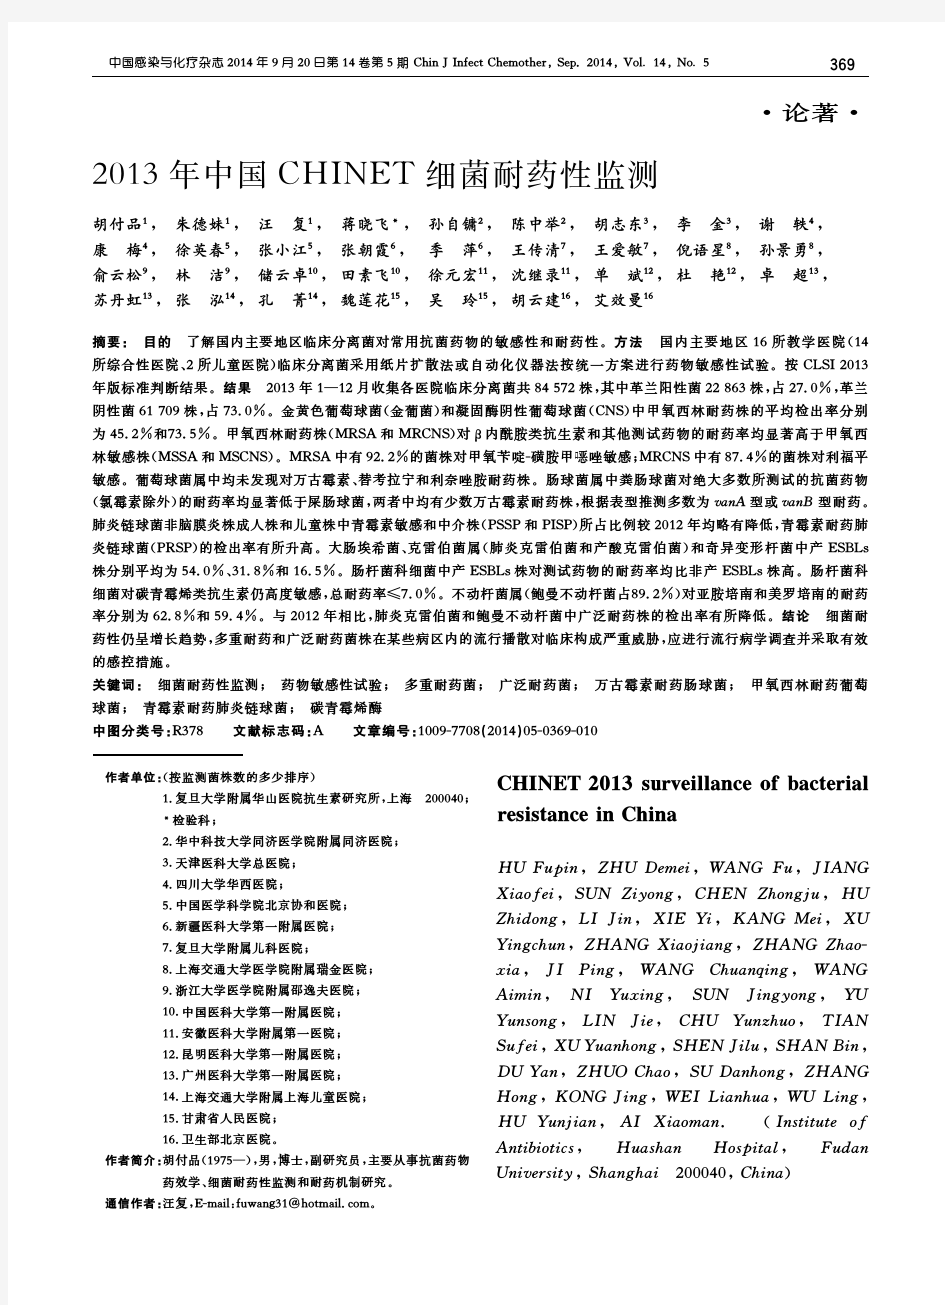 2013年中国chinet细菌耐药性监测